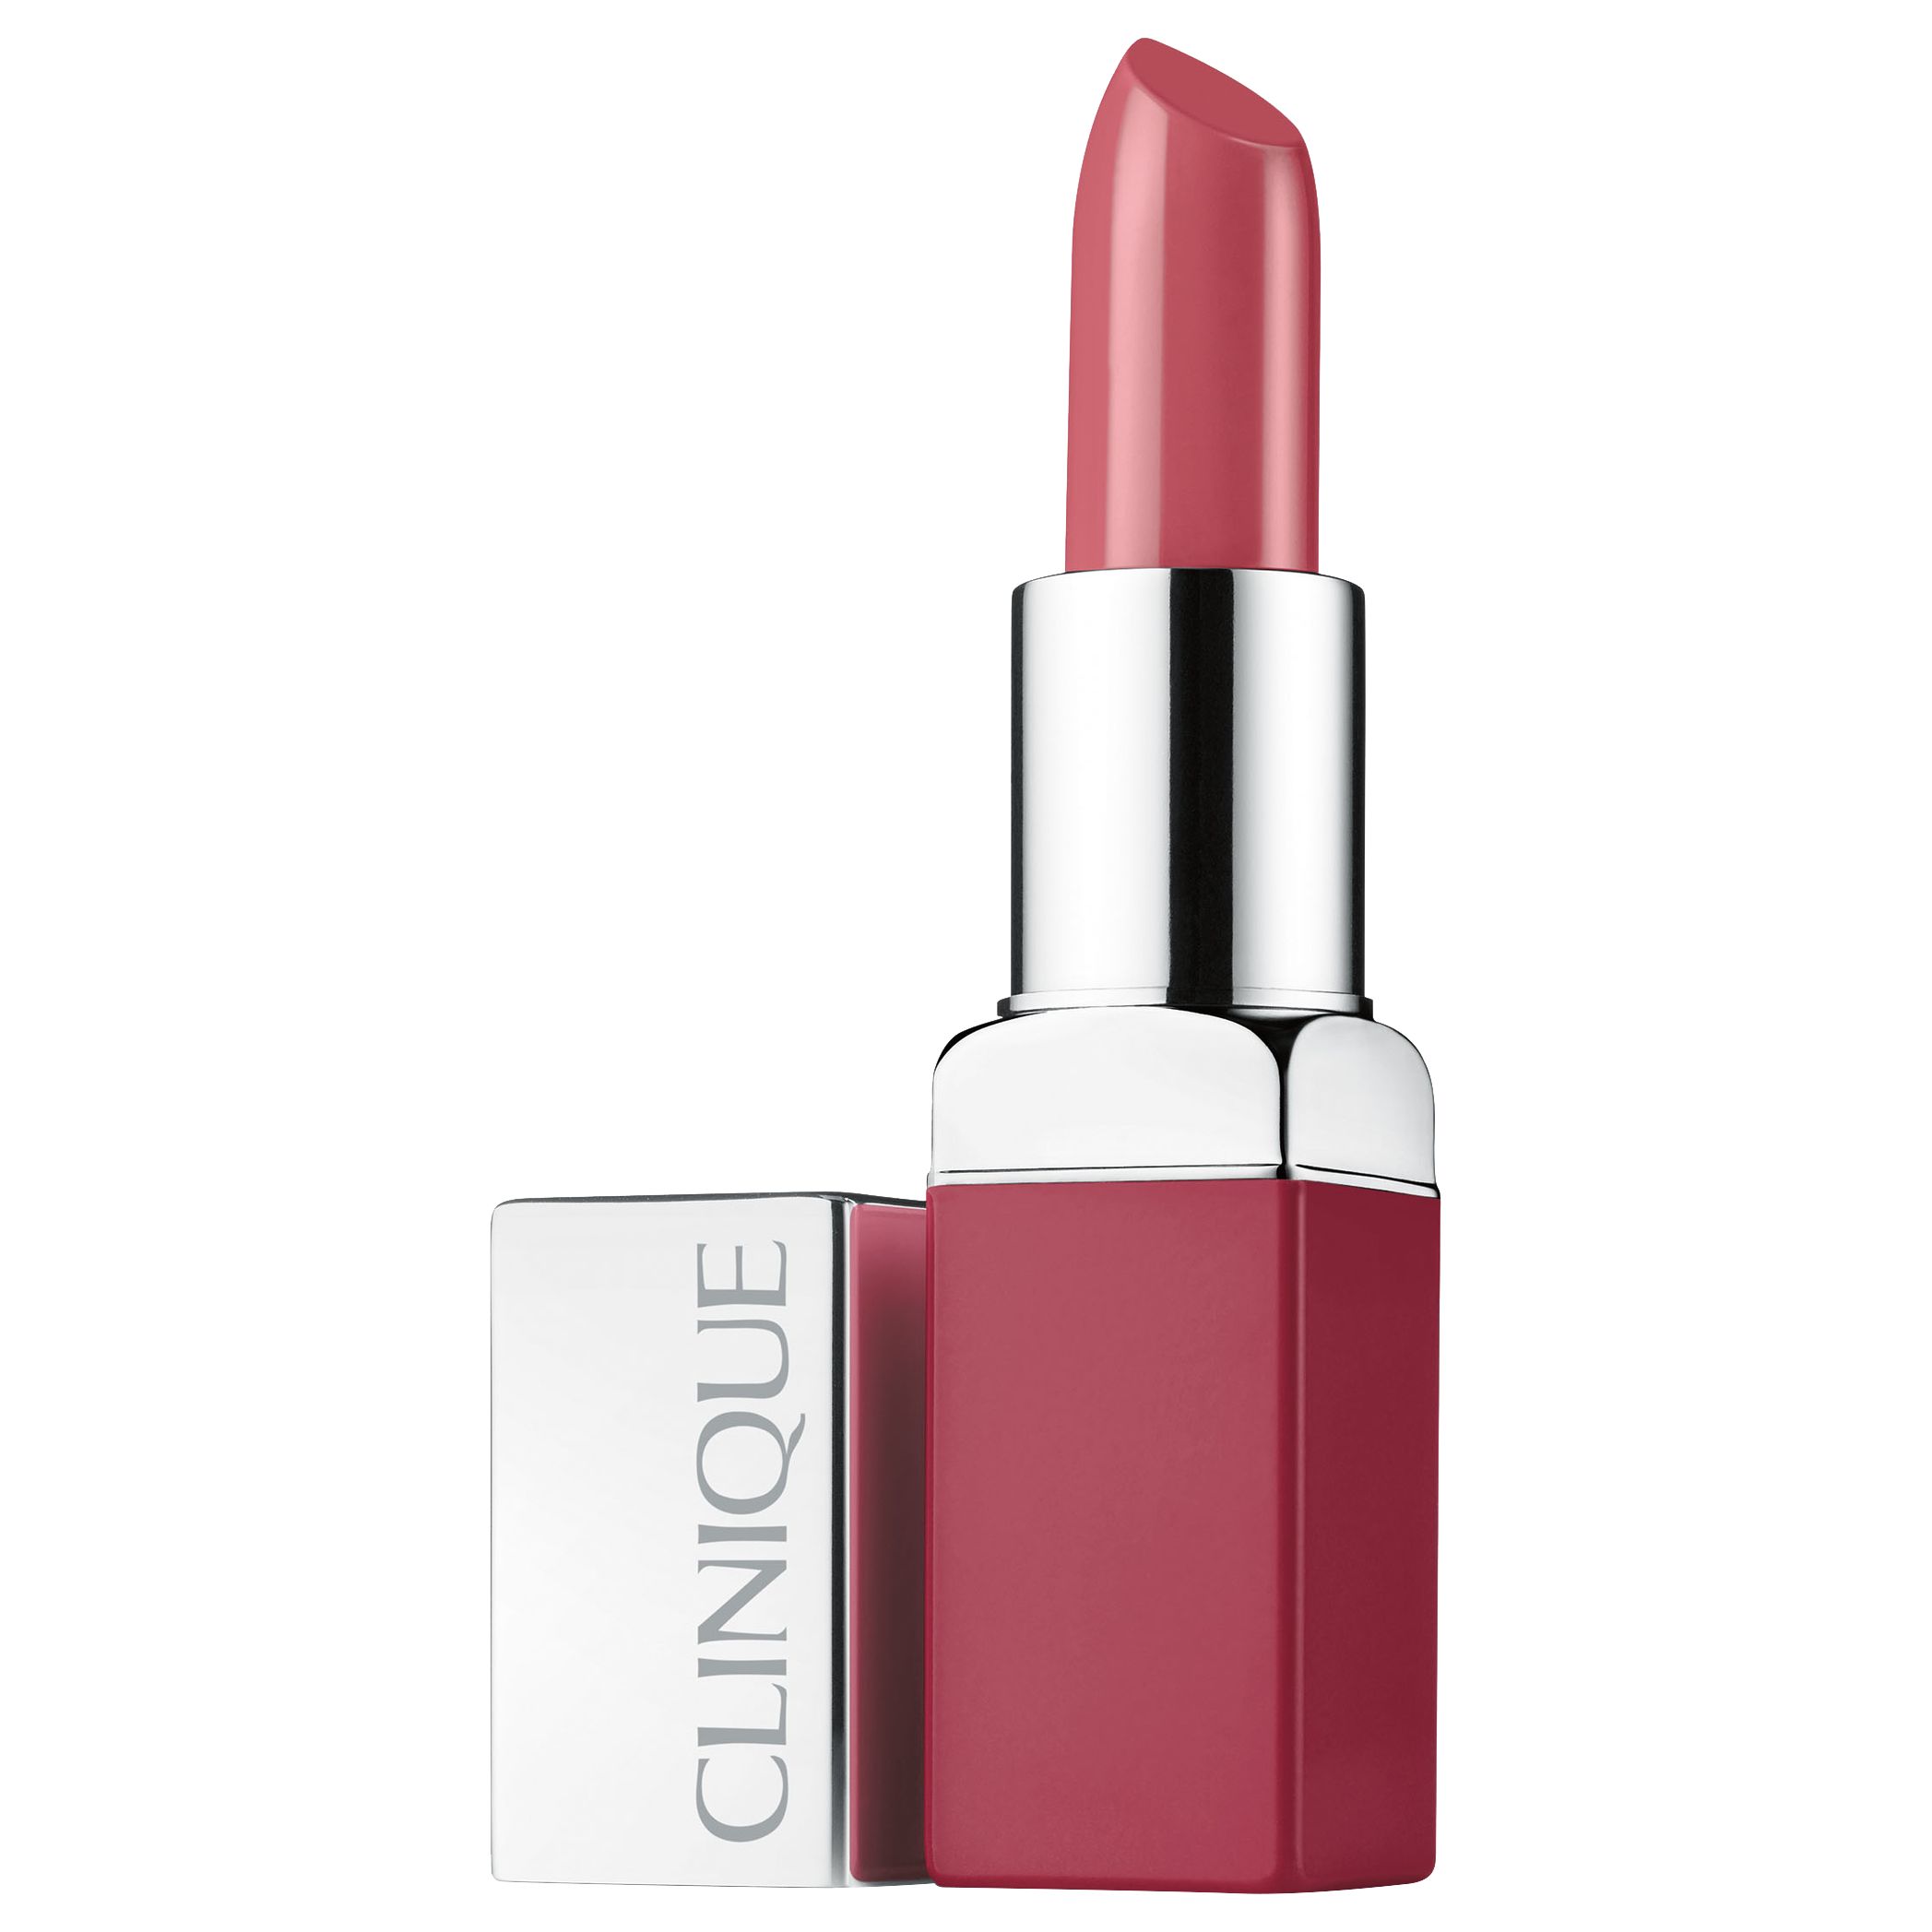 Clinique Pop Lip Colour and Primer Lipstick